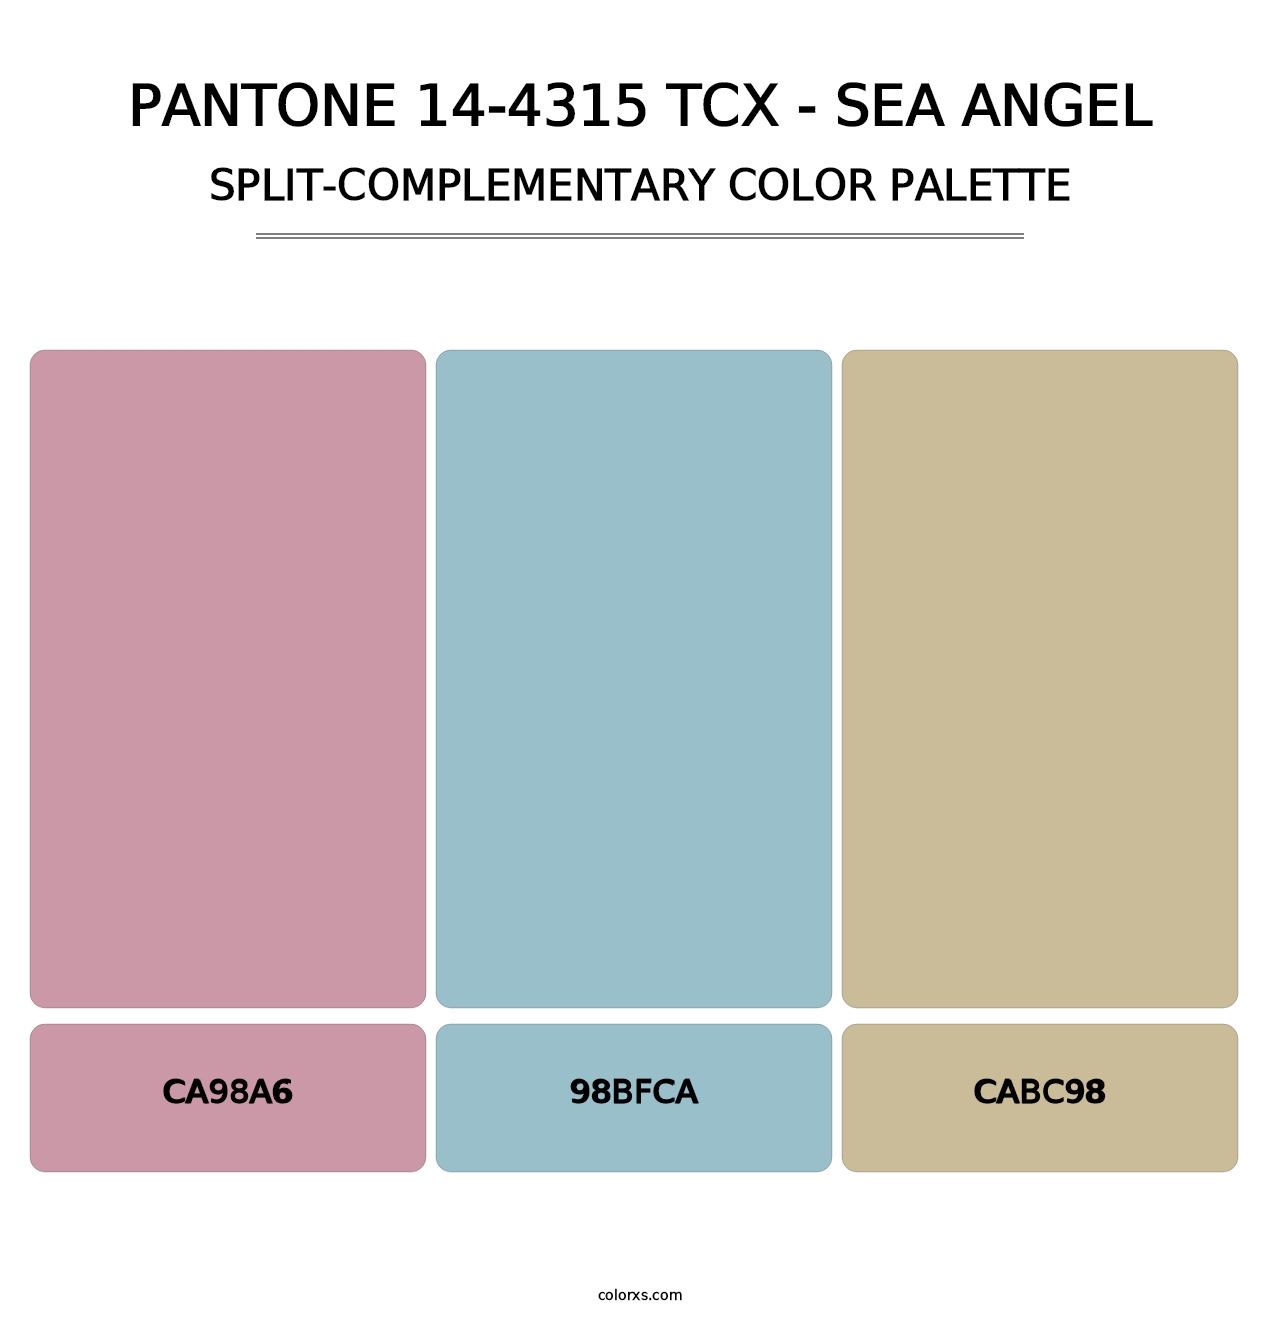 PANTONE 14-4315 TCX - Sea Angel - Split-Complementary Color Palette